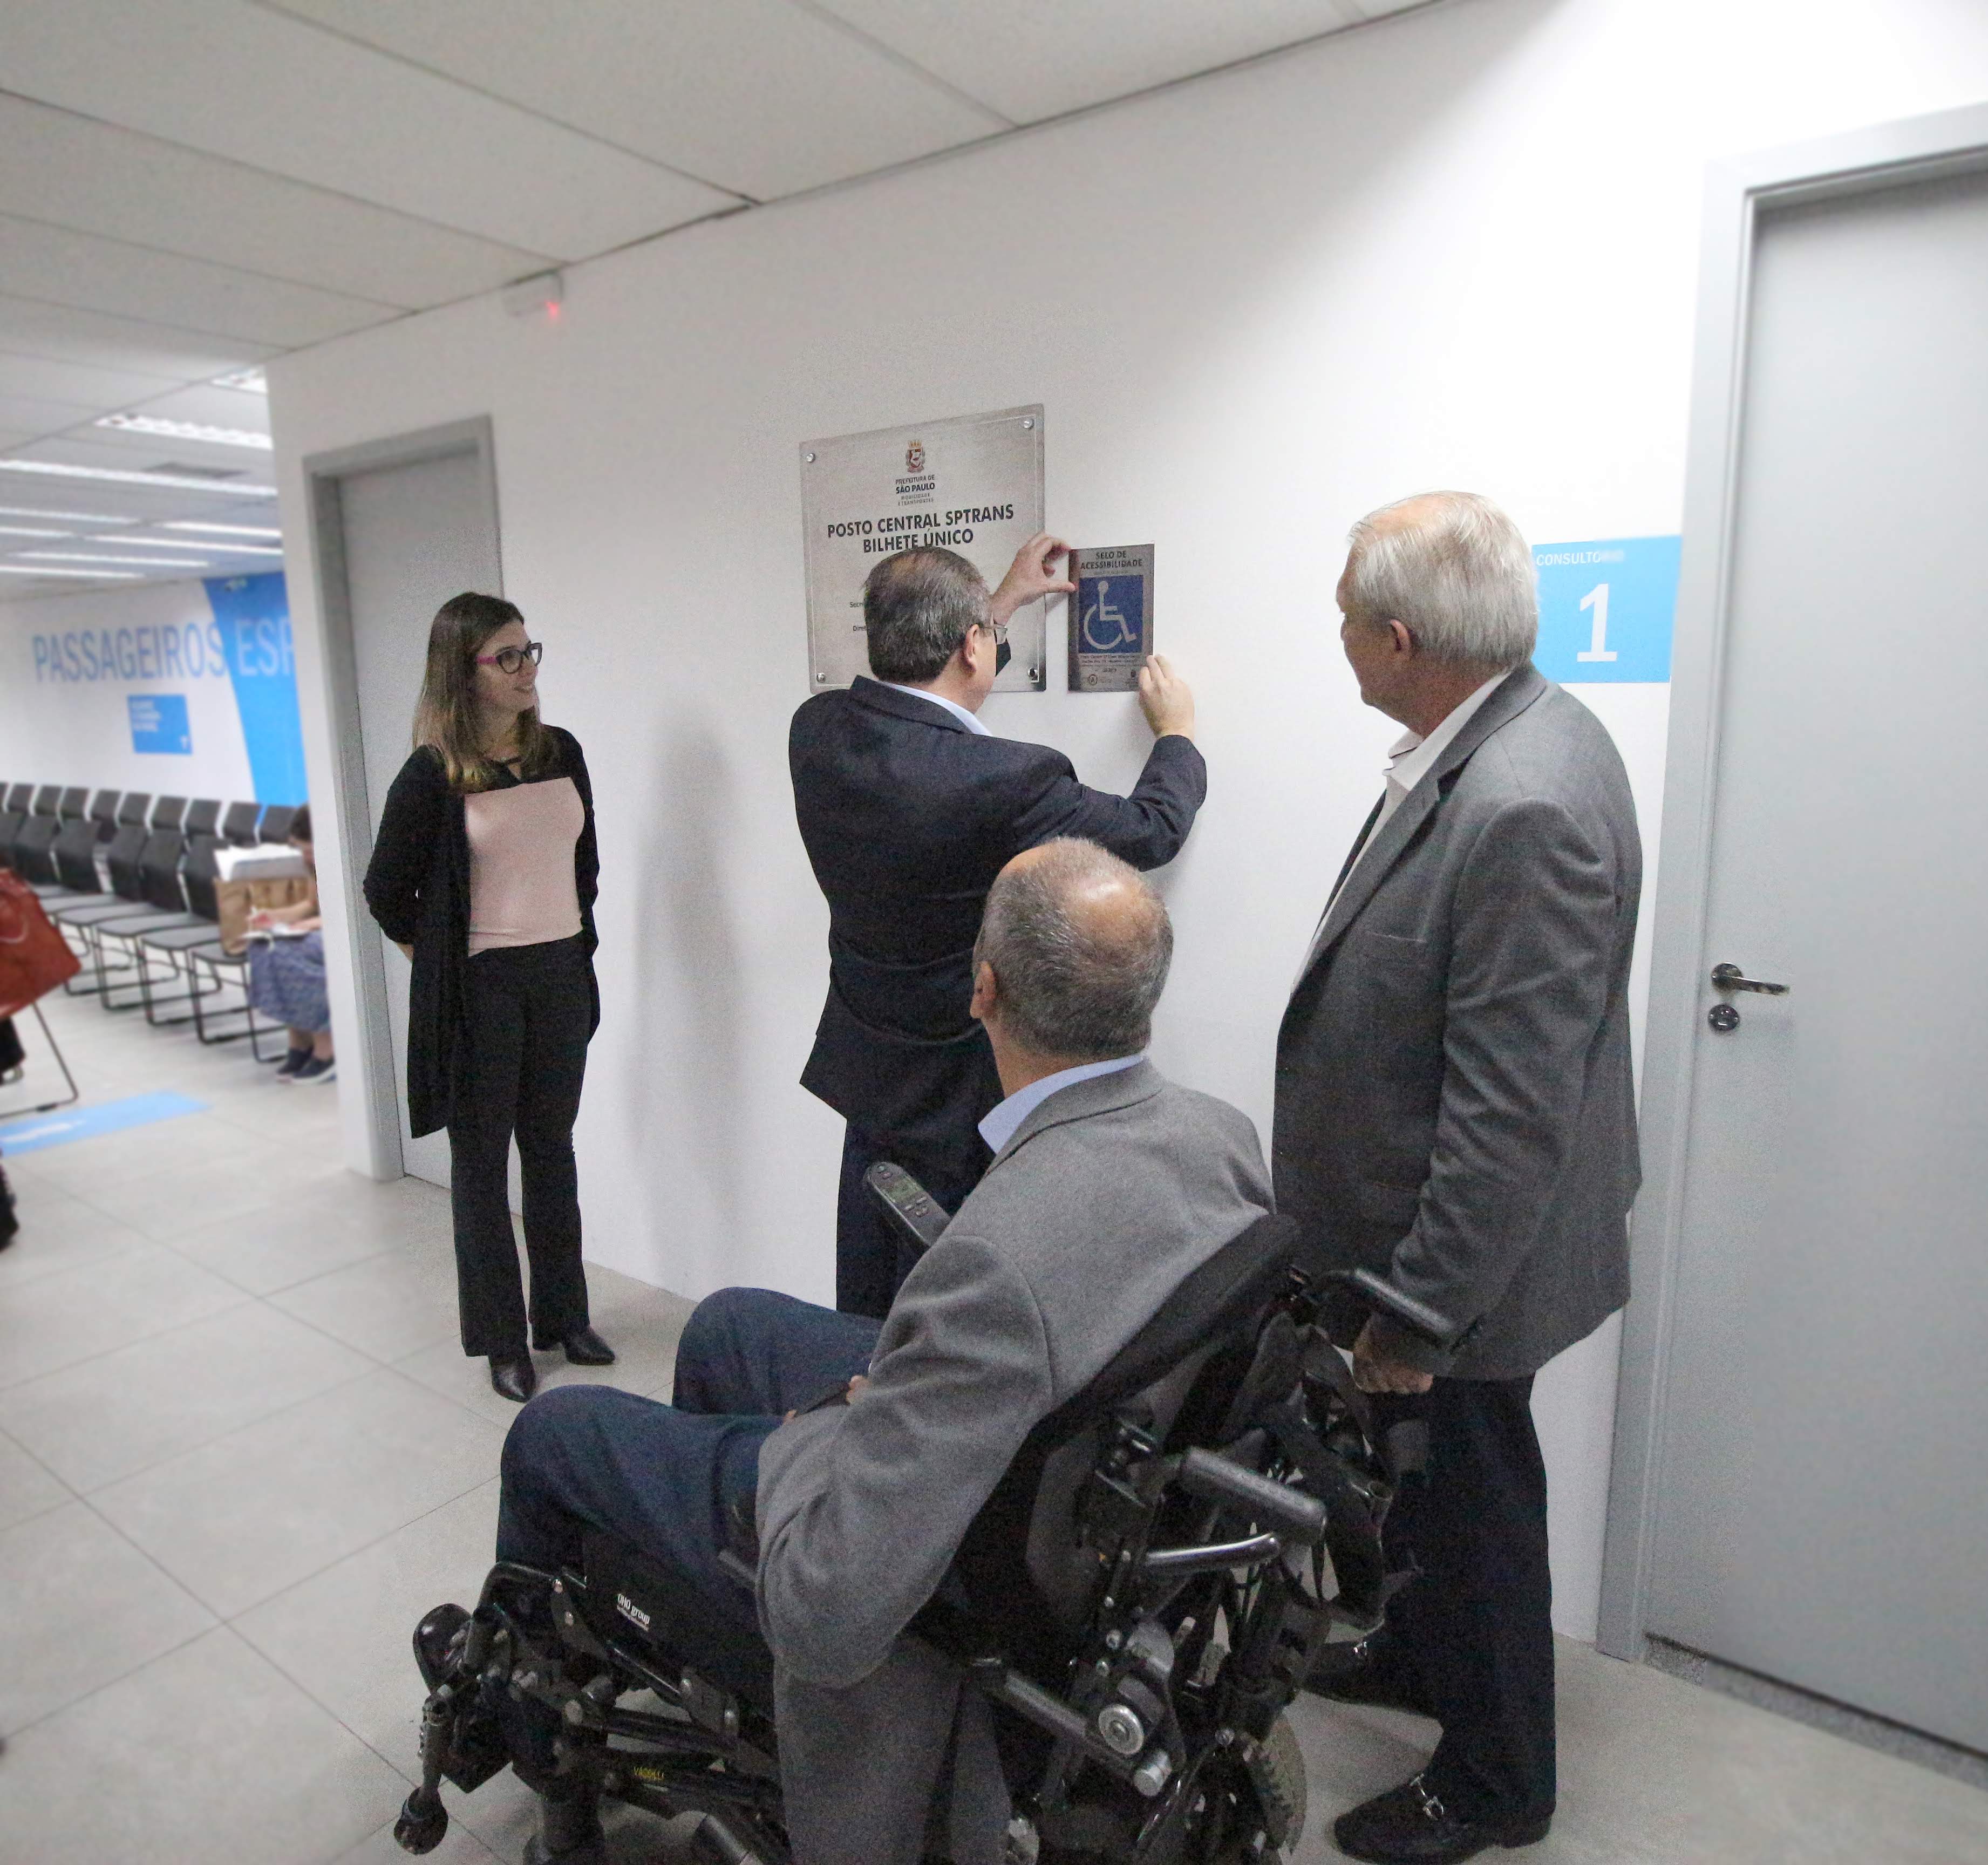 Quatro pessoas, uma delas colocando uma placa de selo de acessibilidade arquitetônica na parede enquanto os outros observam, entre eles, um homem em uma cadeira de rodas motorizada